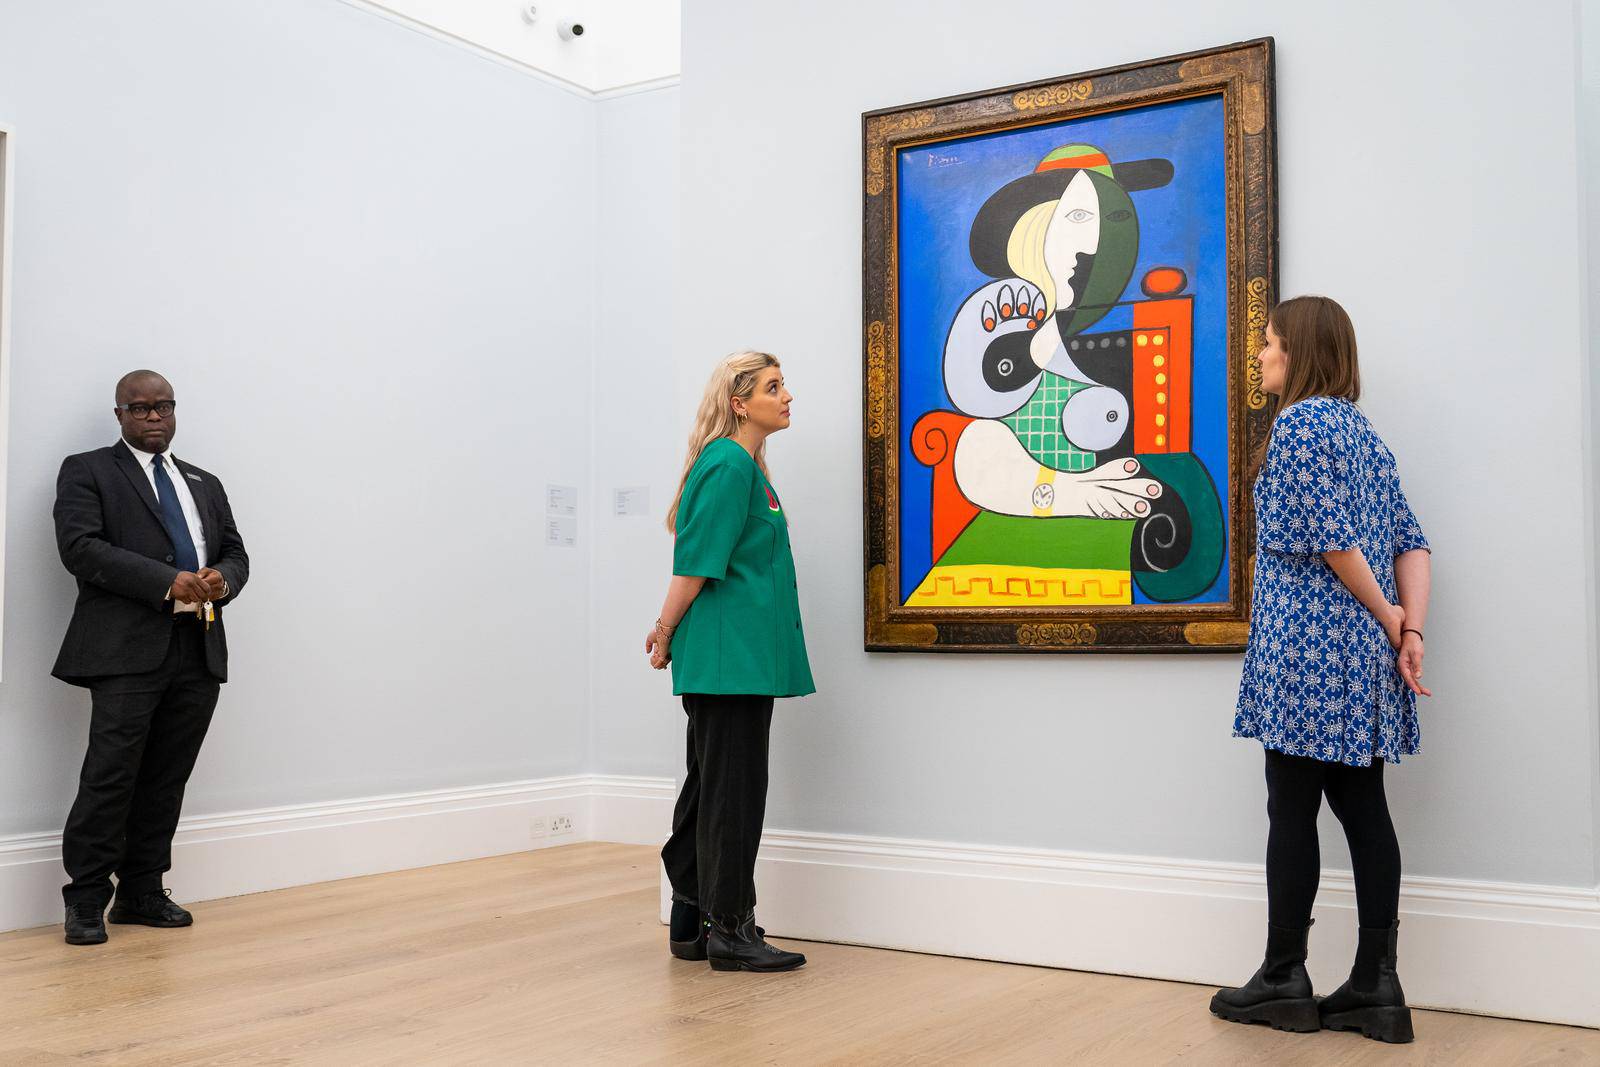 Remek-djelo Pabla Picassa jedno je od najvrjednijih djela ikada ponu?enih na prodaju